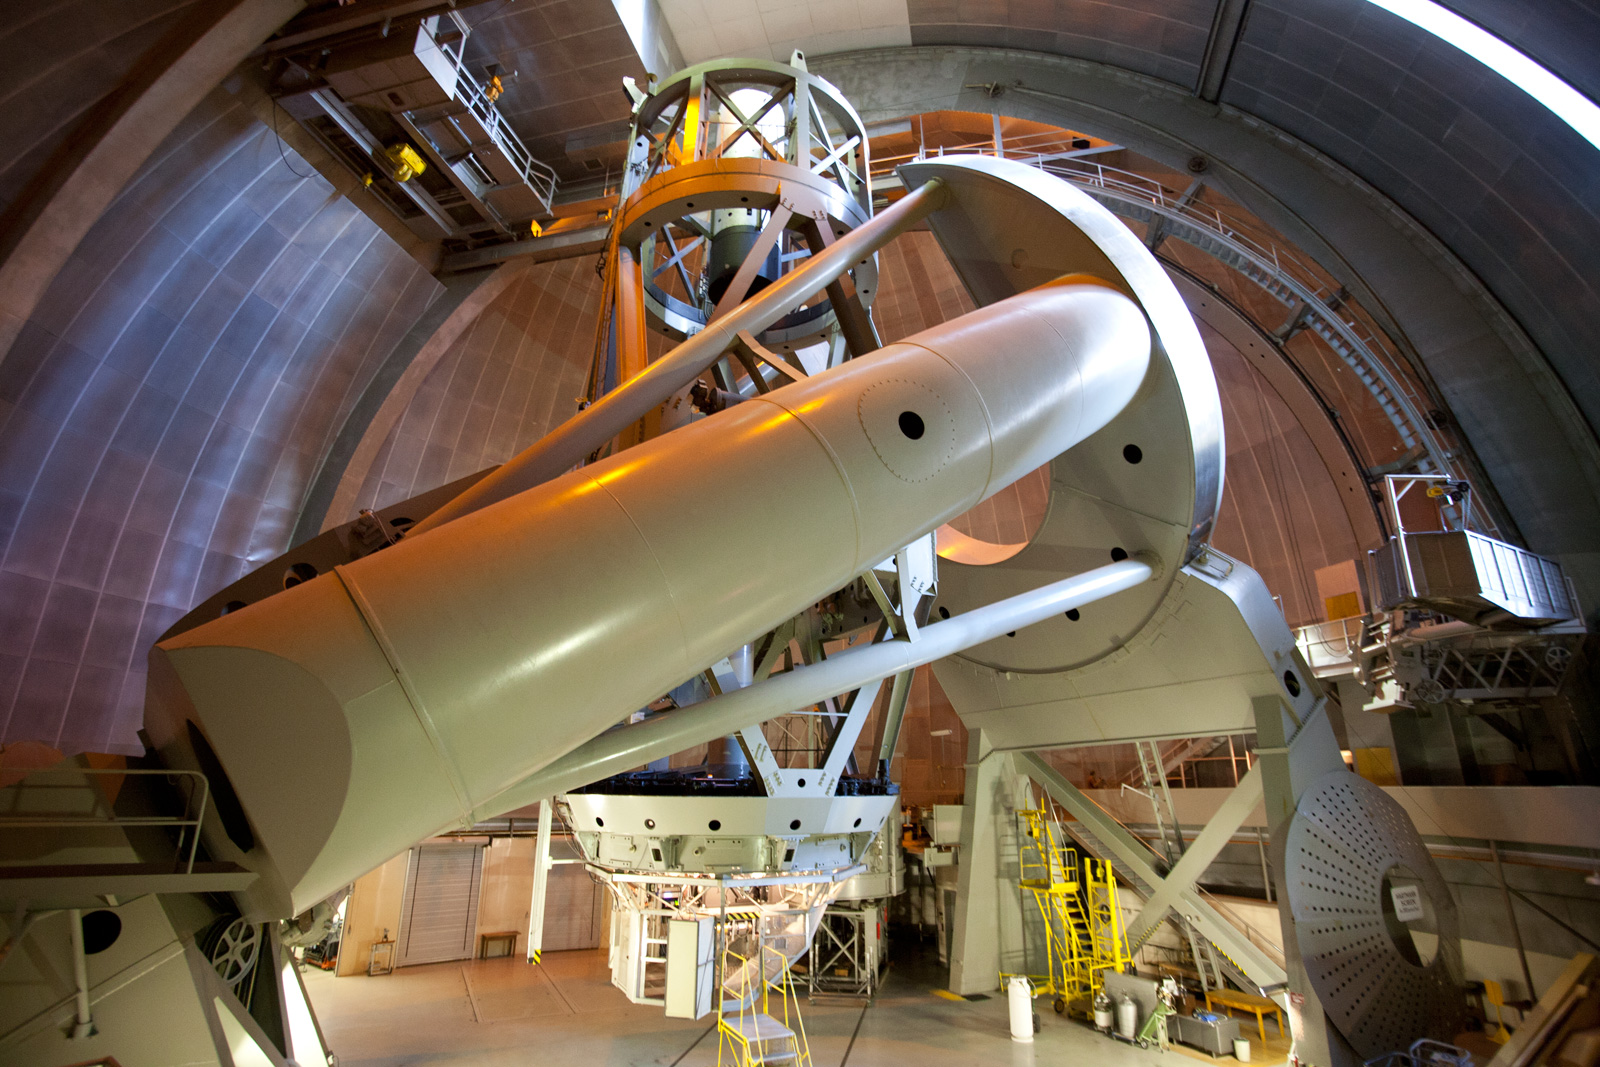 Hale Telescope in Palomar Observatory